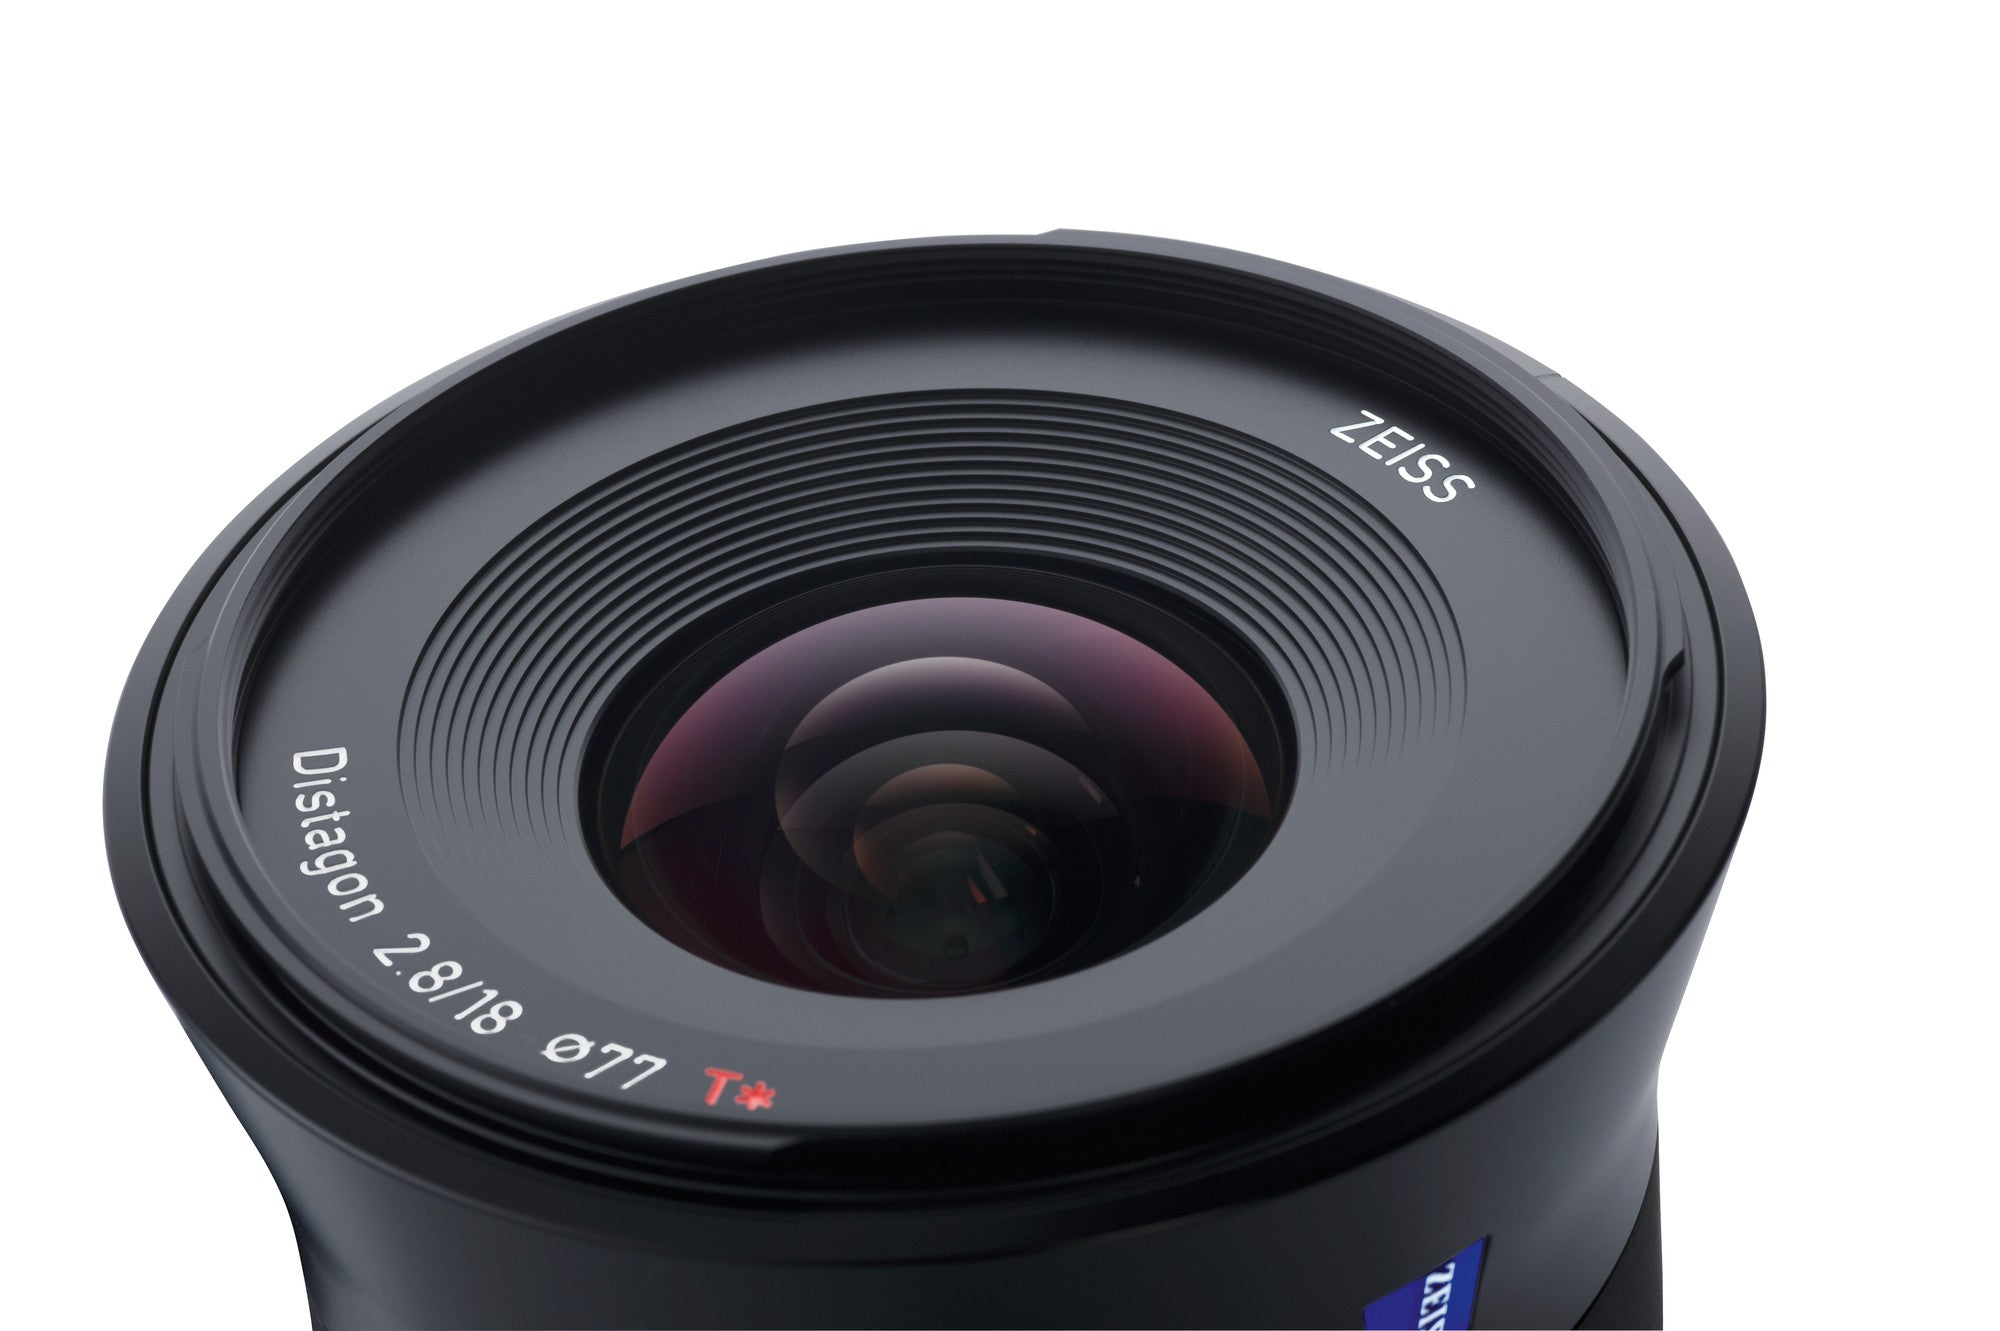 Zeiss Batis 18mm f2.8 Lens for Sony E Mount, lenses mirrorless, Zeiss - Pictureline  - 4